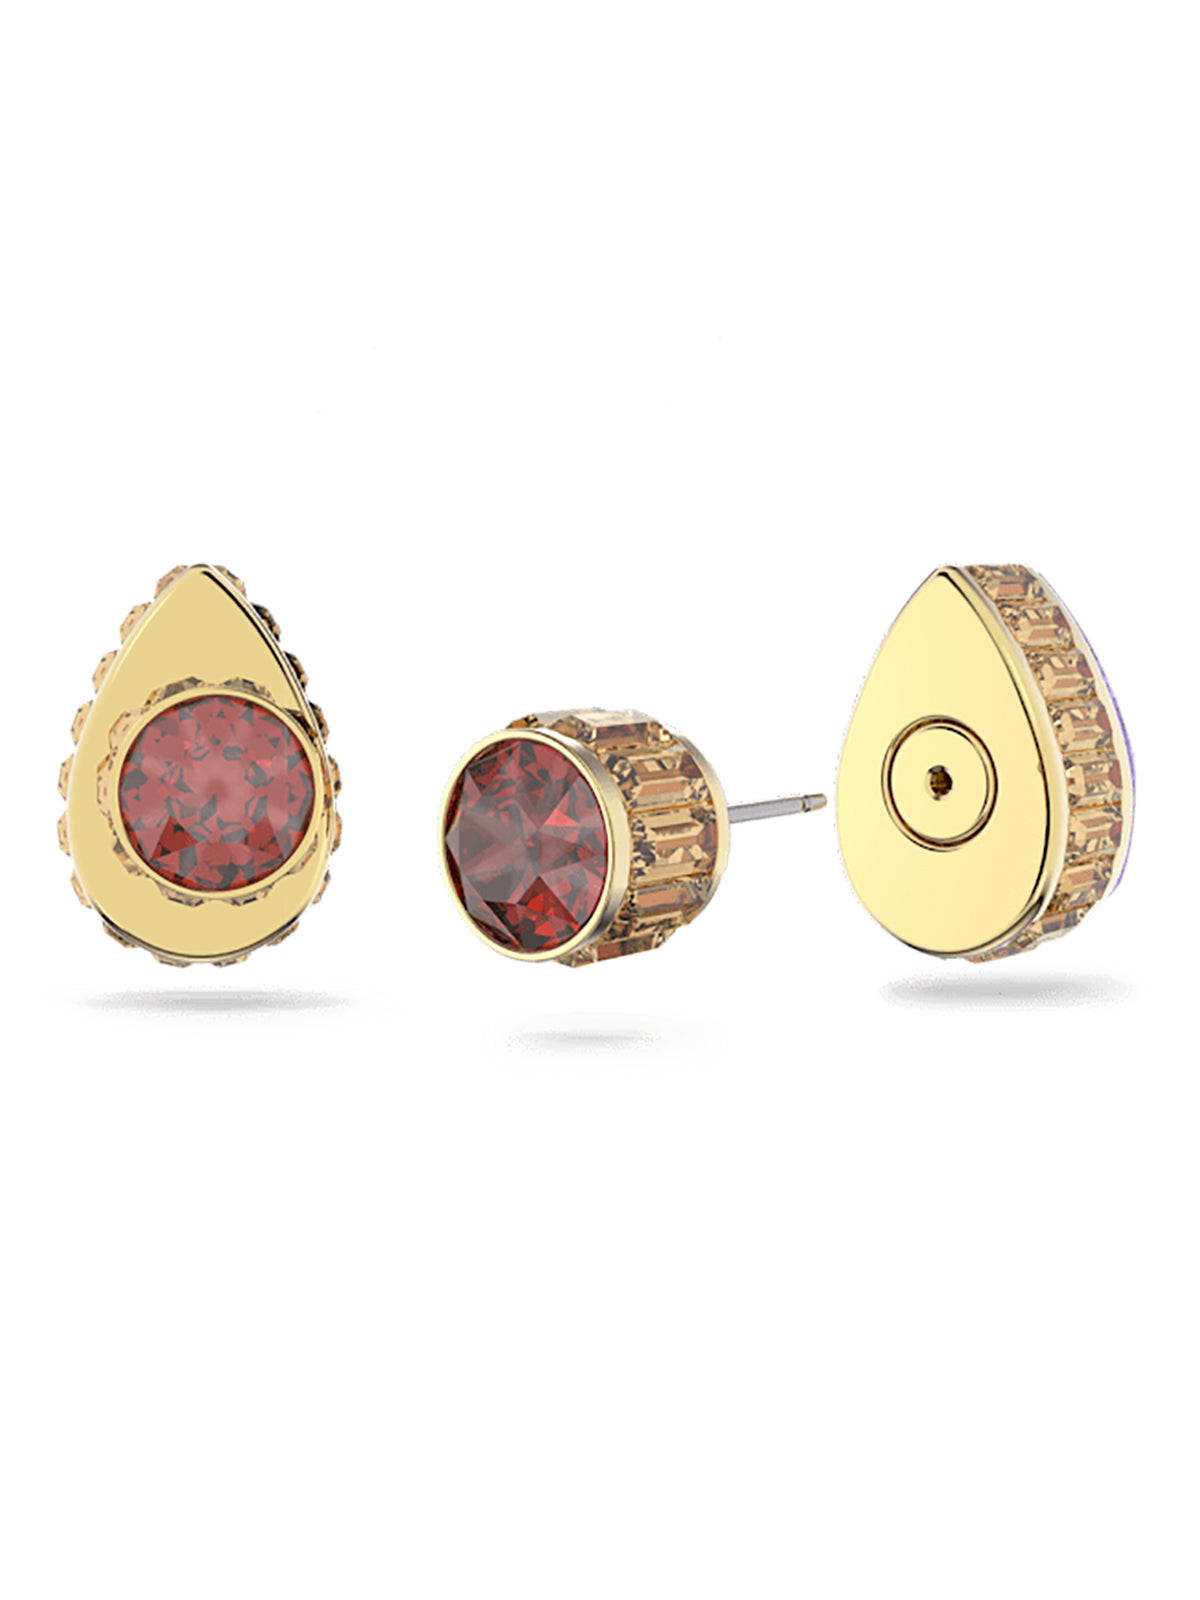 Swarovski Oribita Multi-Coloured Crystal Stud Earrings 5641405